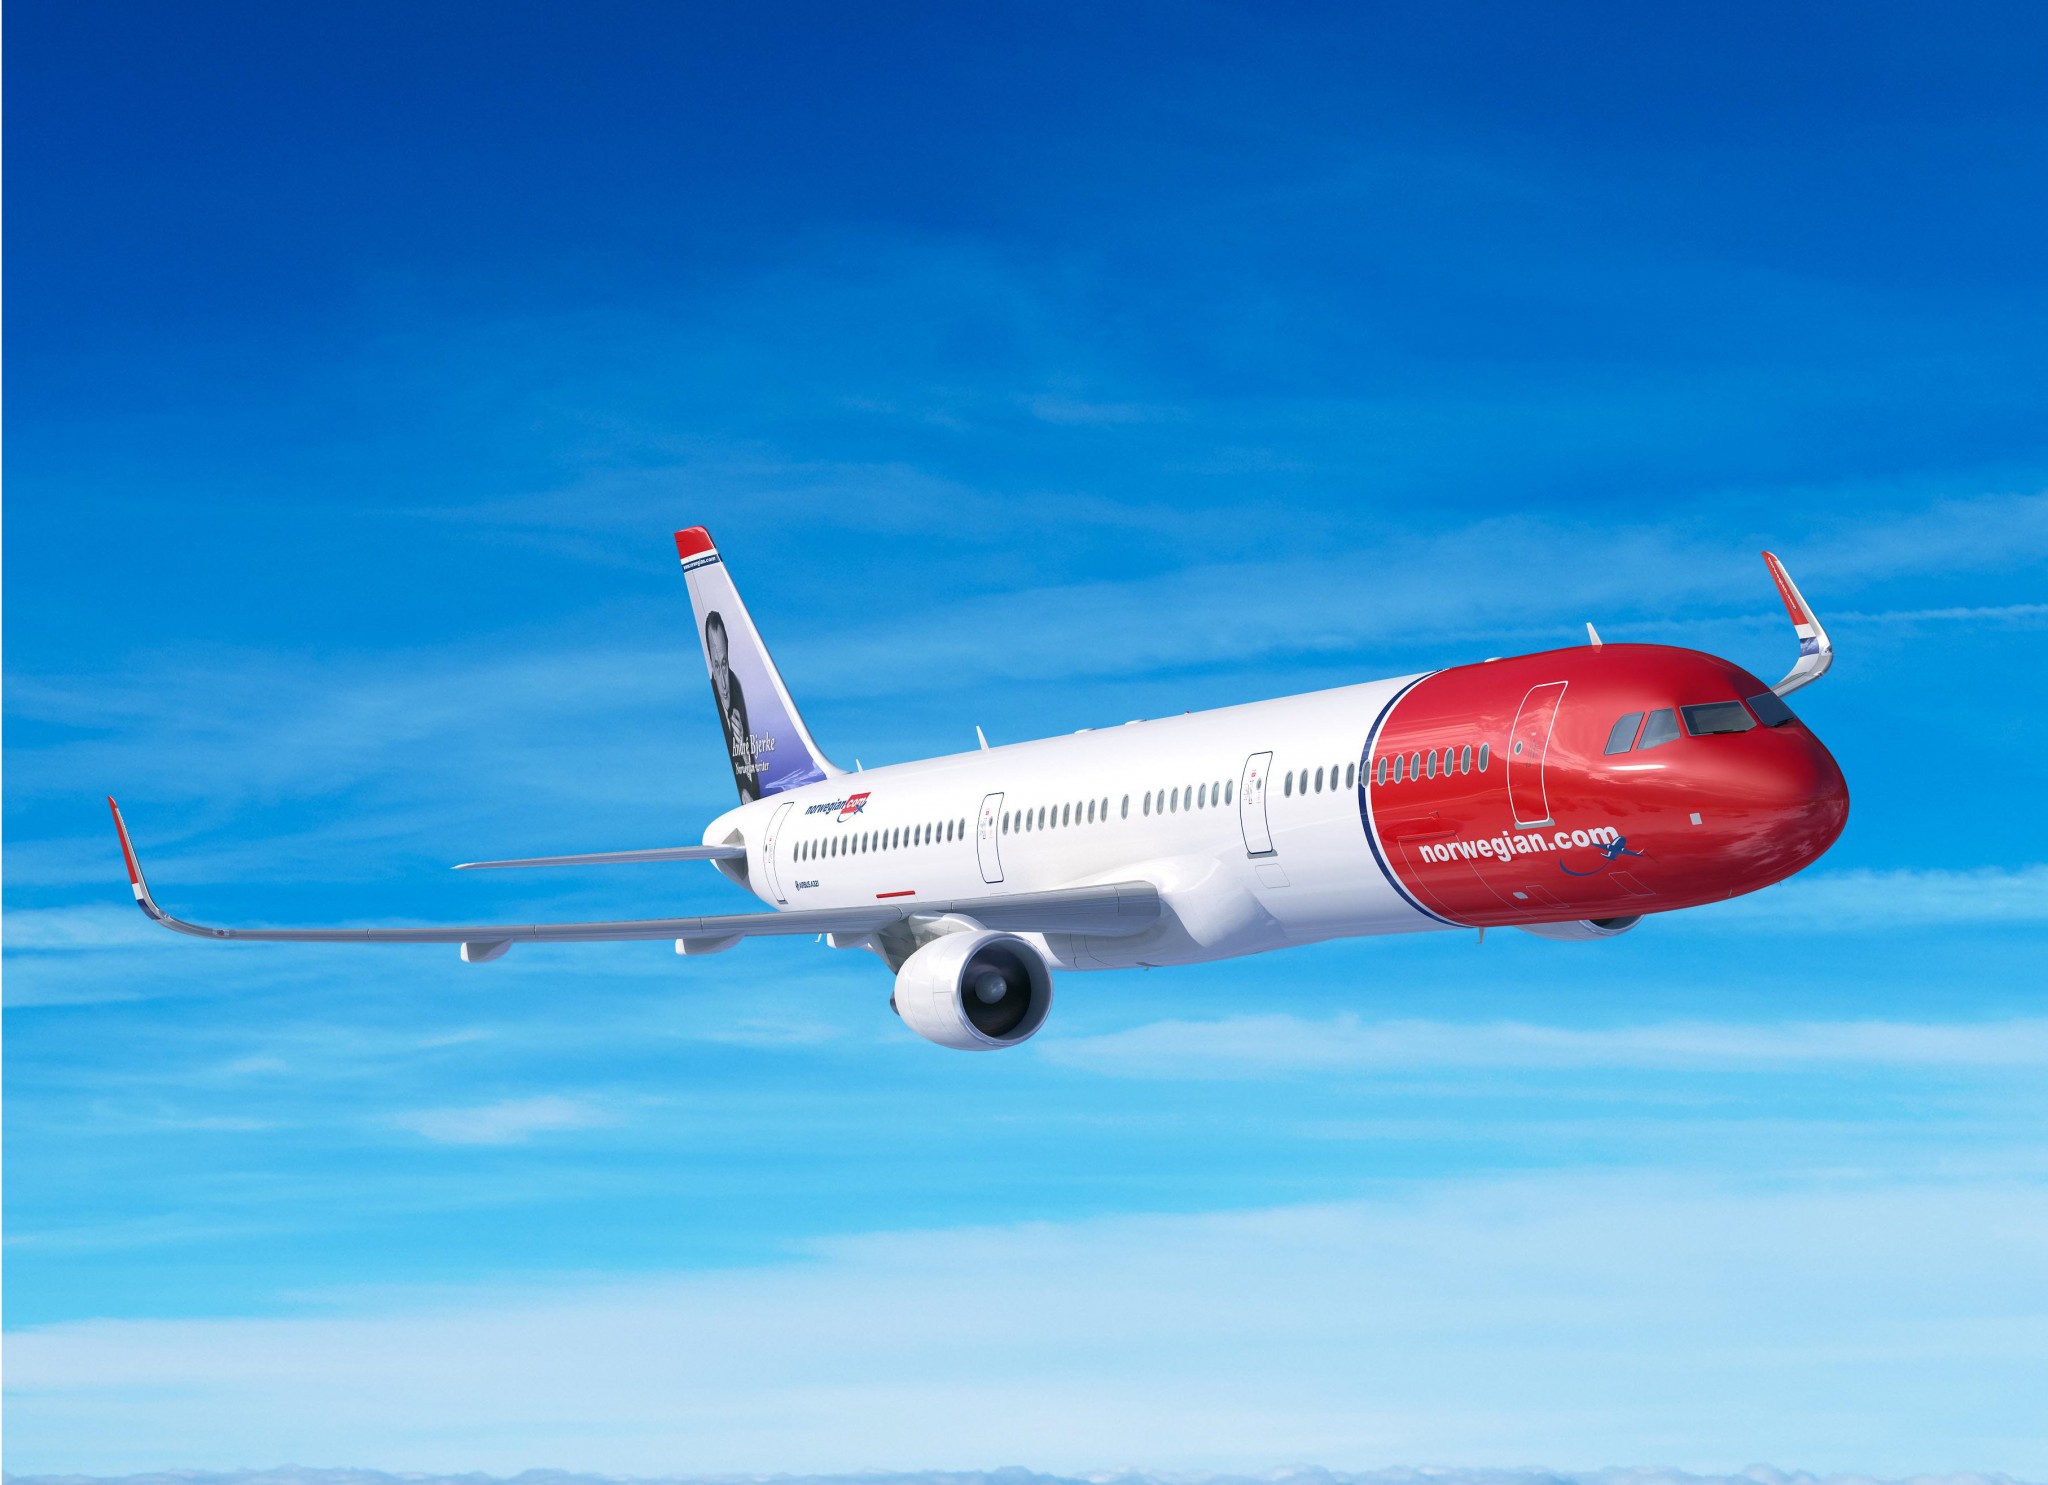 Norwegian Air September traffic